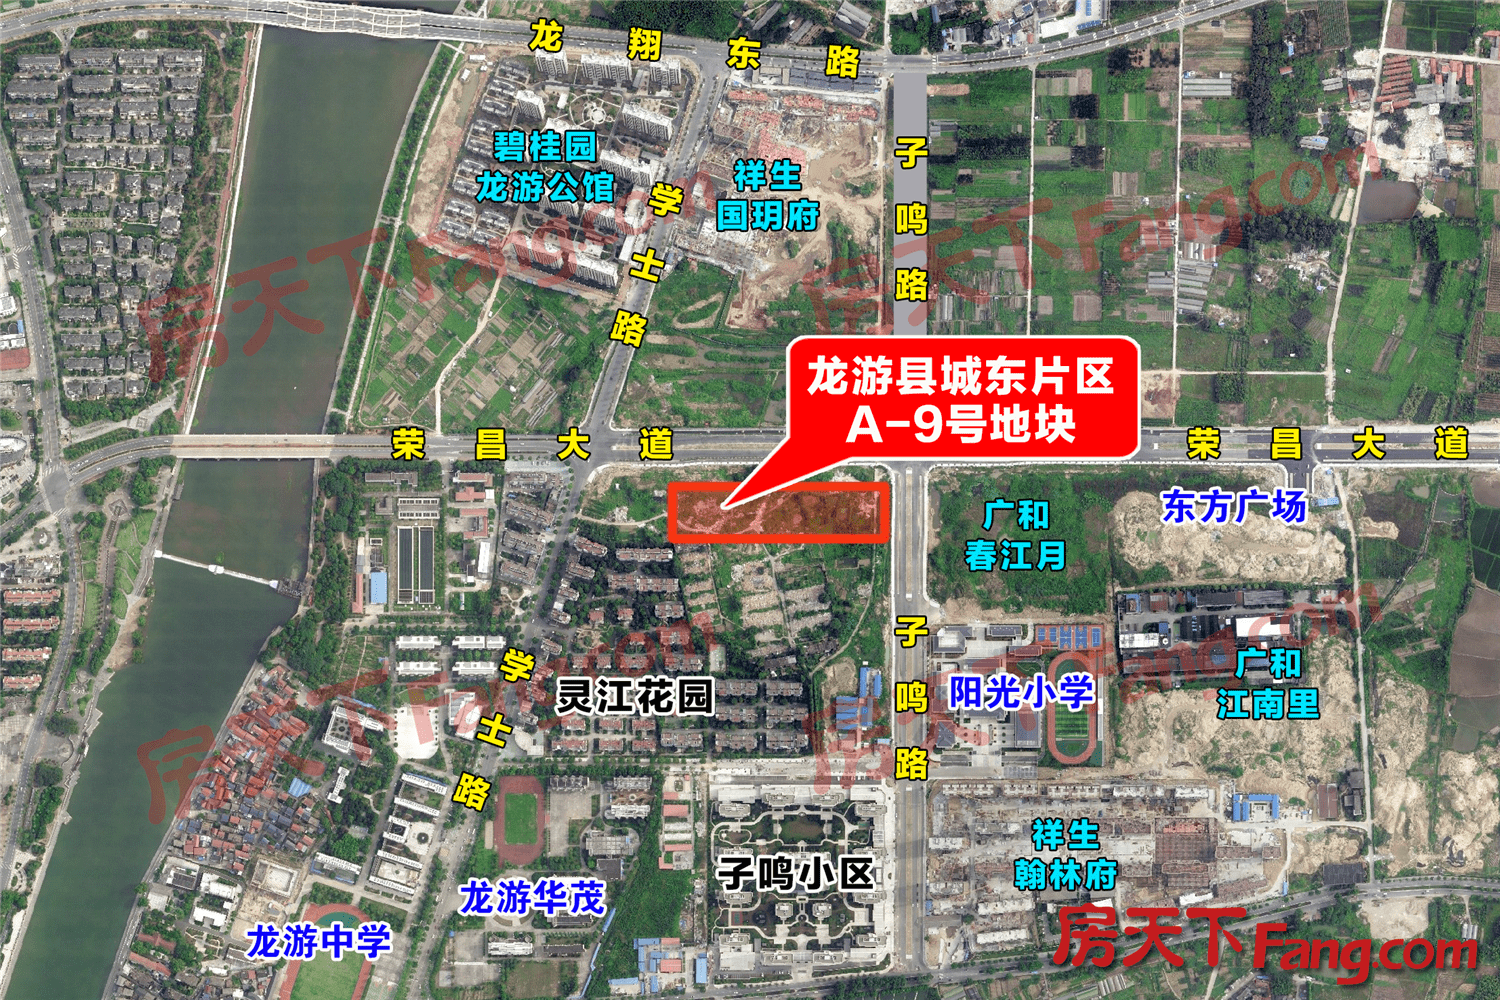 【房天下】龙游城东推一宗宅地,楼面价6323元/㎡,按未来社区理念开发